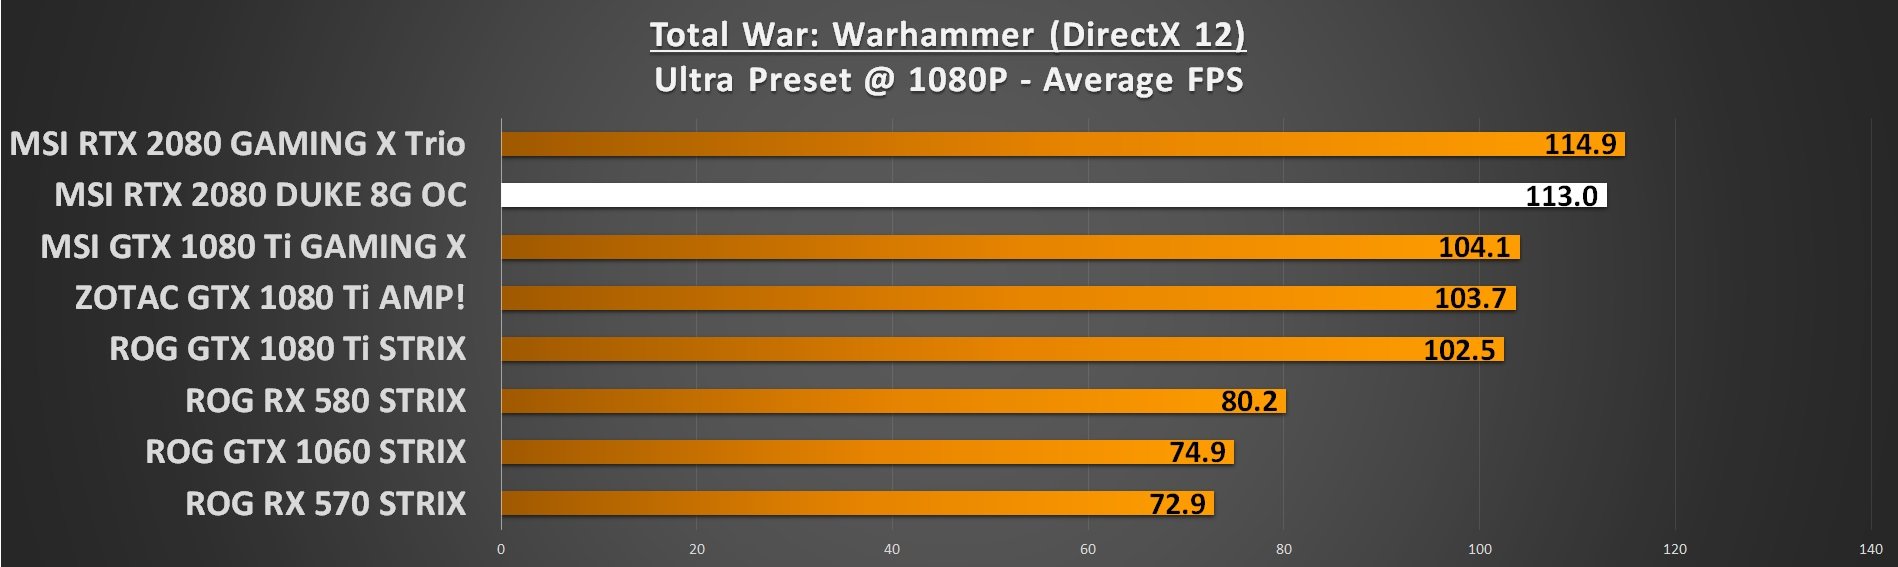 Warhammer 1080p